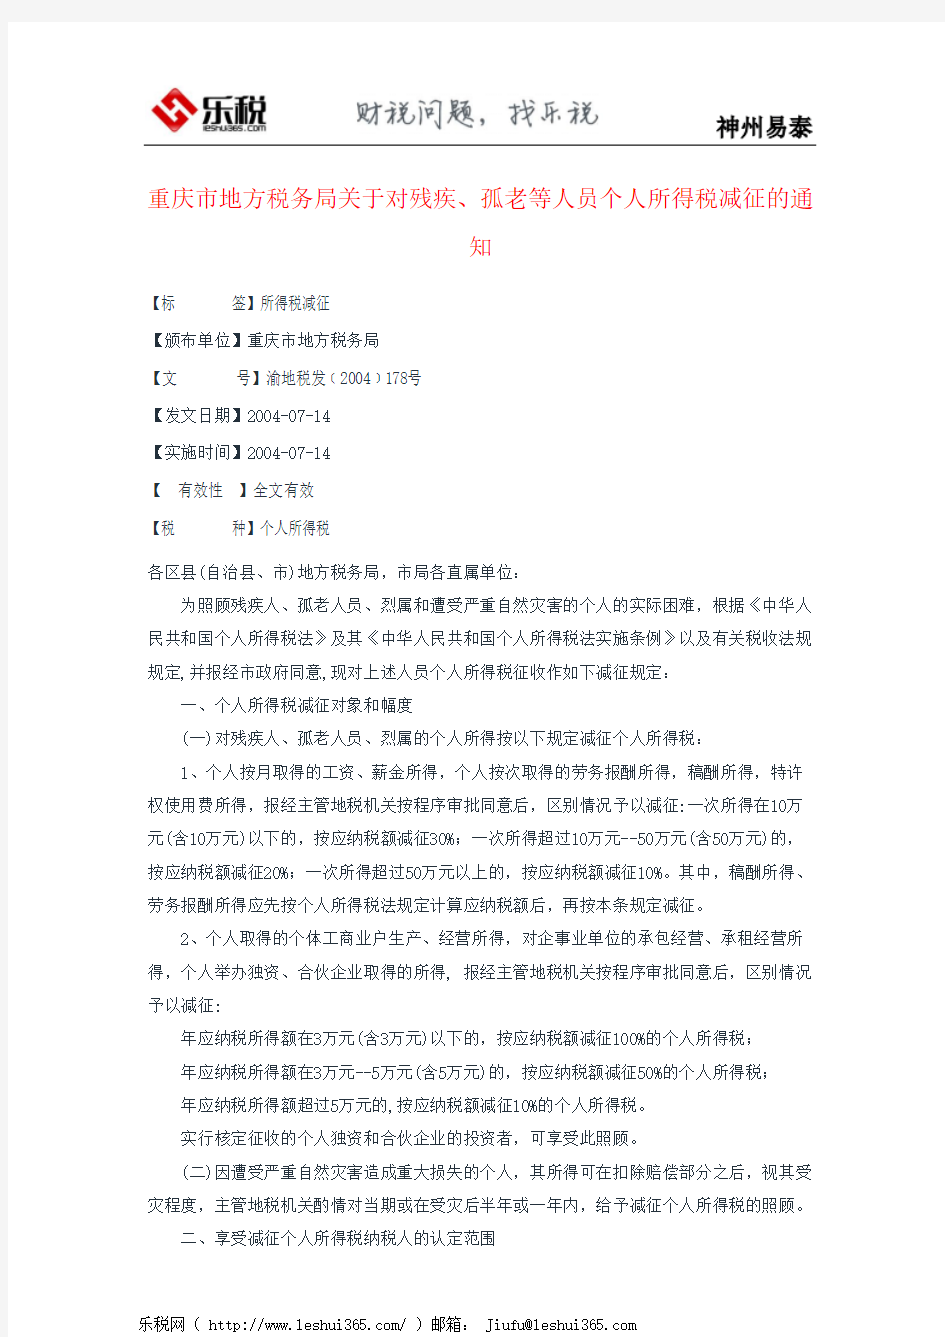 重庆市地方税务局关于对残疾、孤老等人员个人所得税减征的通知